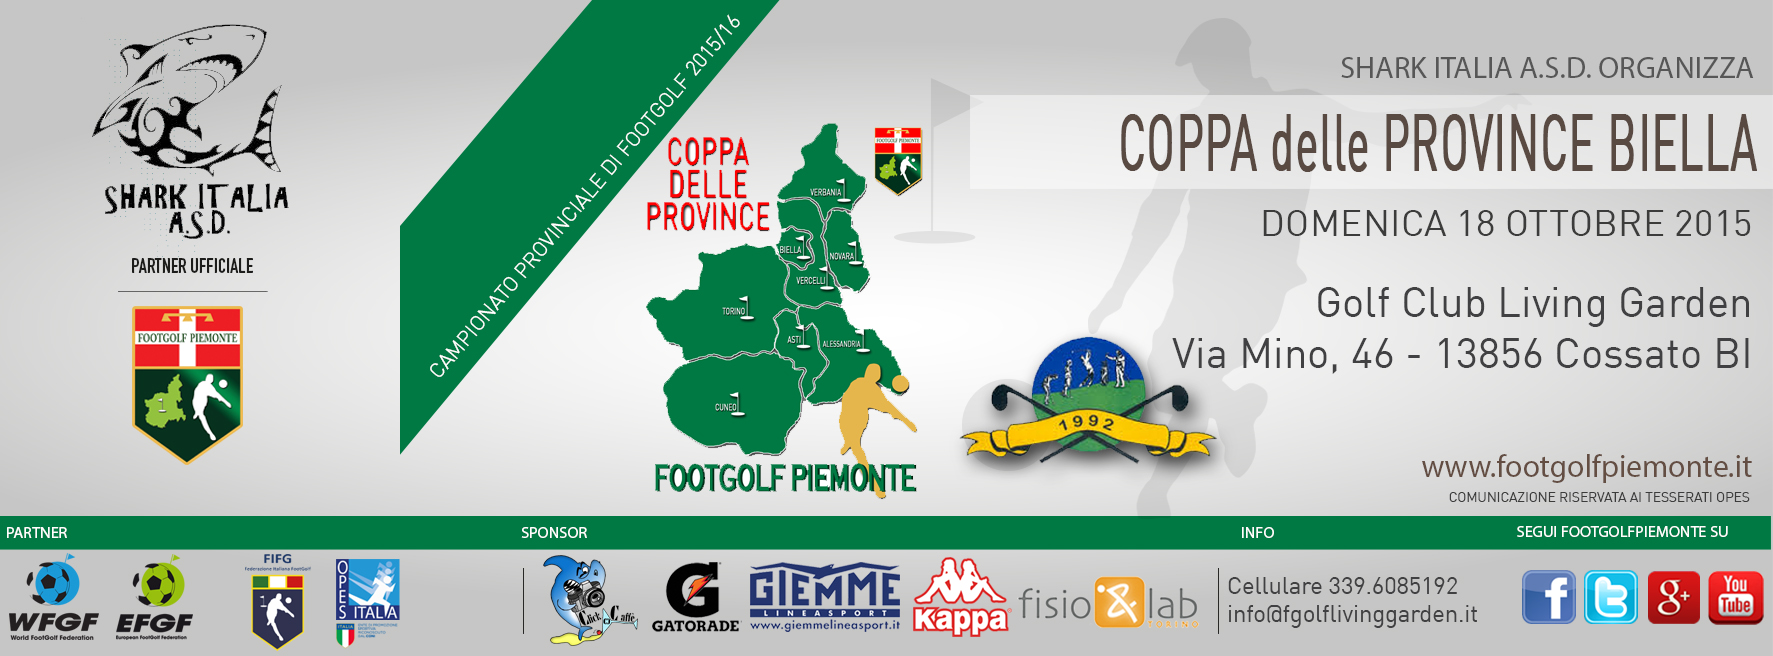 Locandina Coppa delle Province Biella Footgolf Piemonte 2016 Cossato BI domenica 18 ottobre 2015